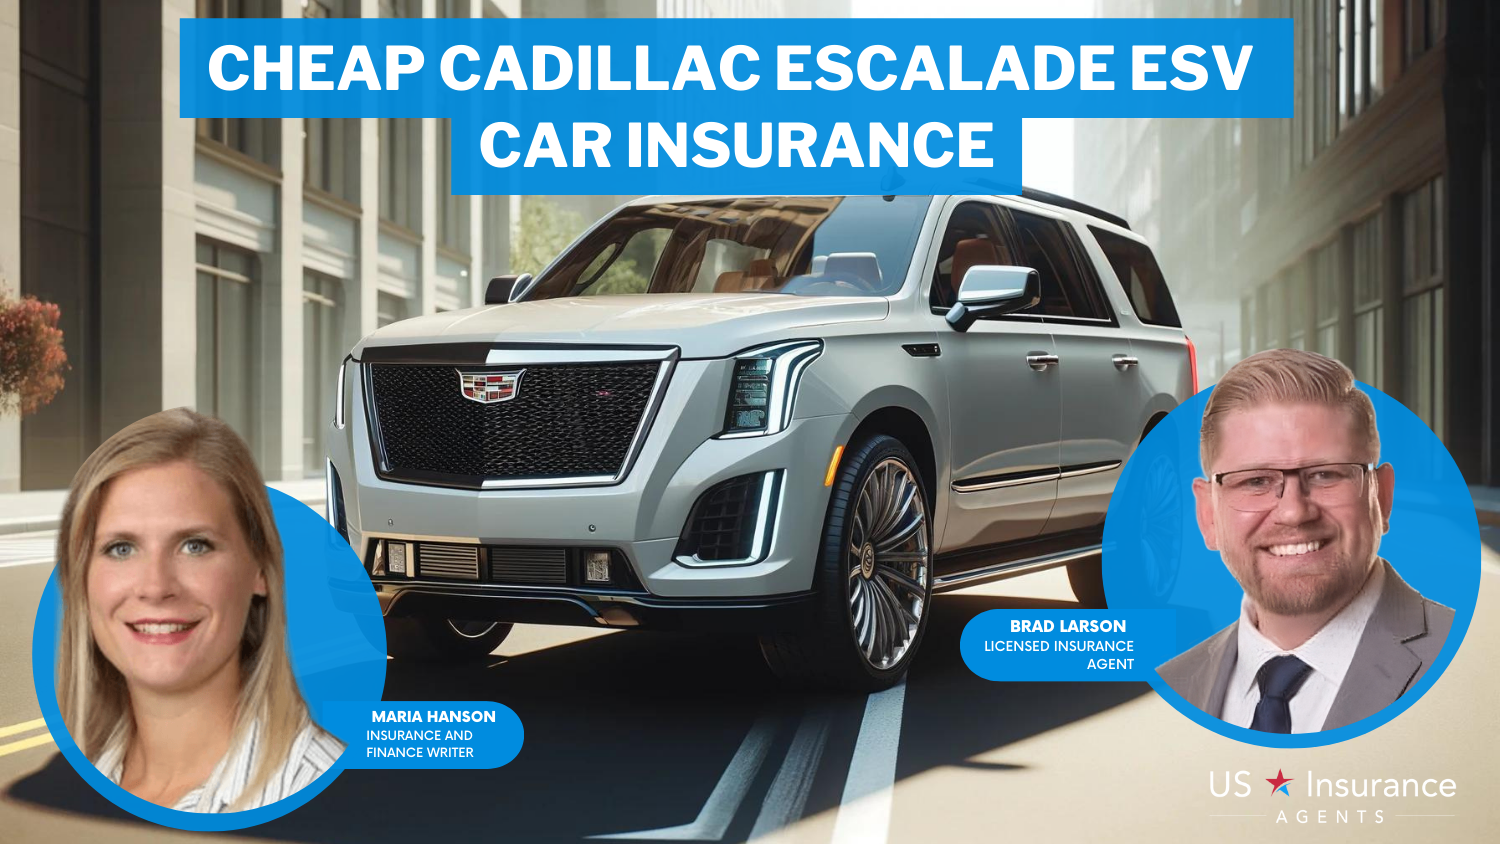 Cheap Cadillac Escalade ESV Car Insurance: Erie, AAA and Chubb